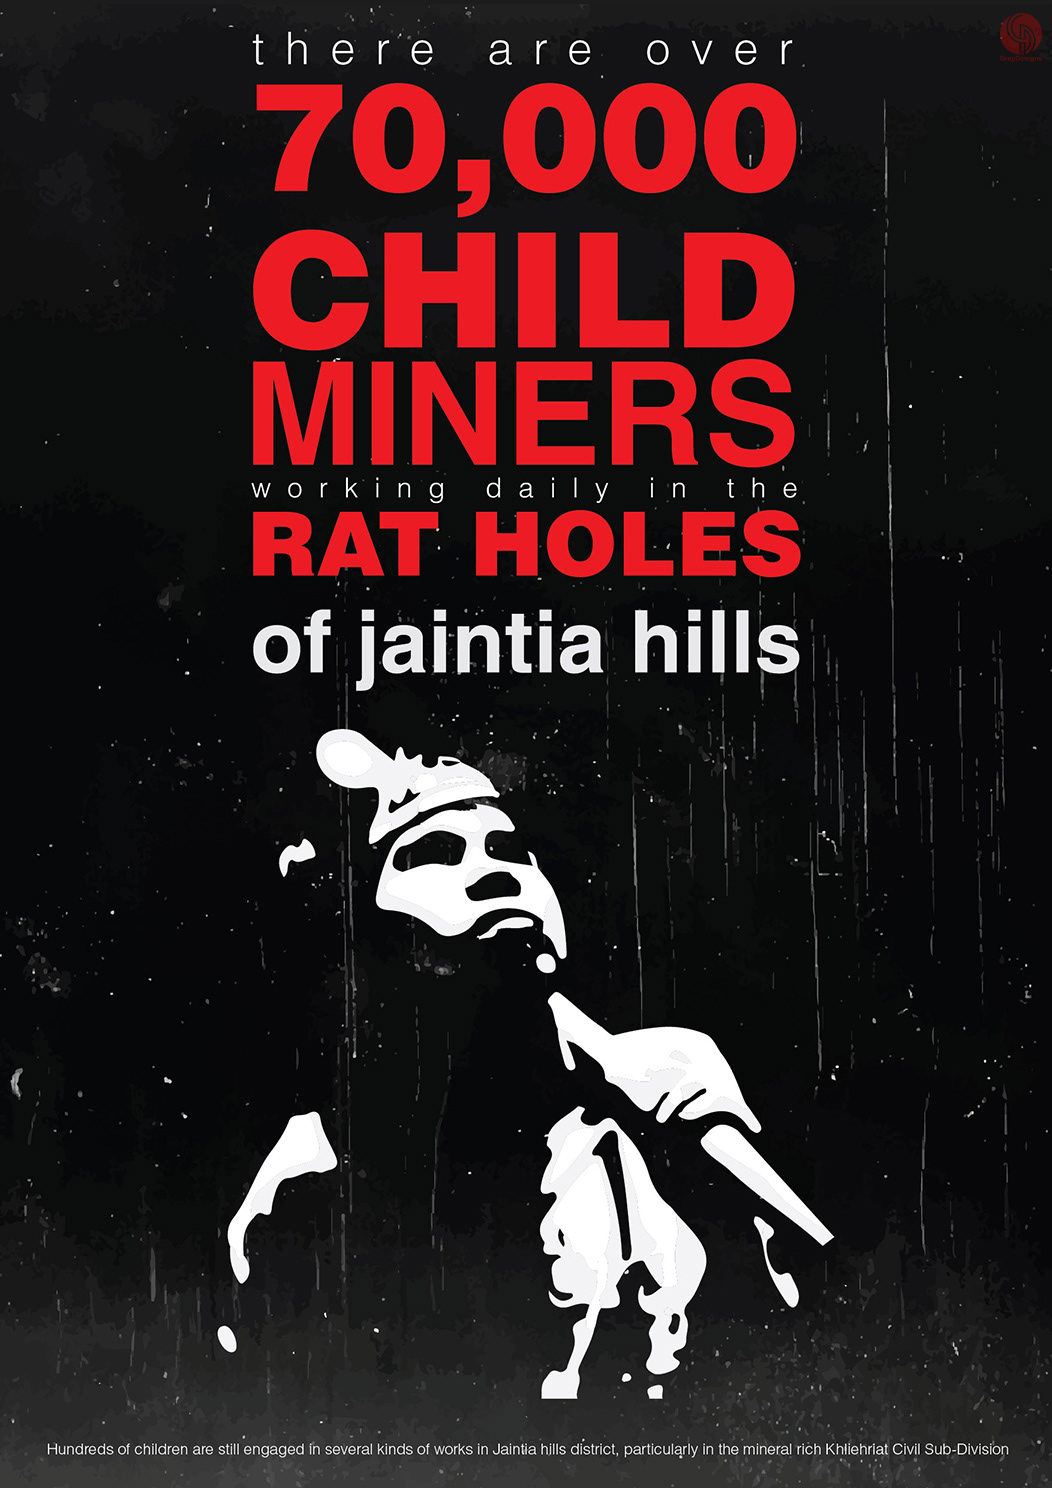 Coal Mining jaintia MEGHALAYA child labour